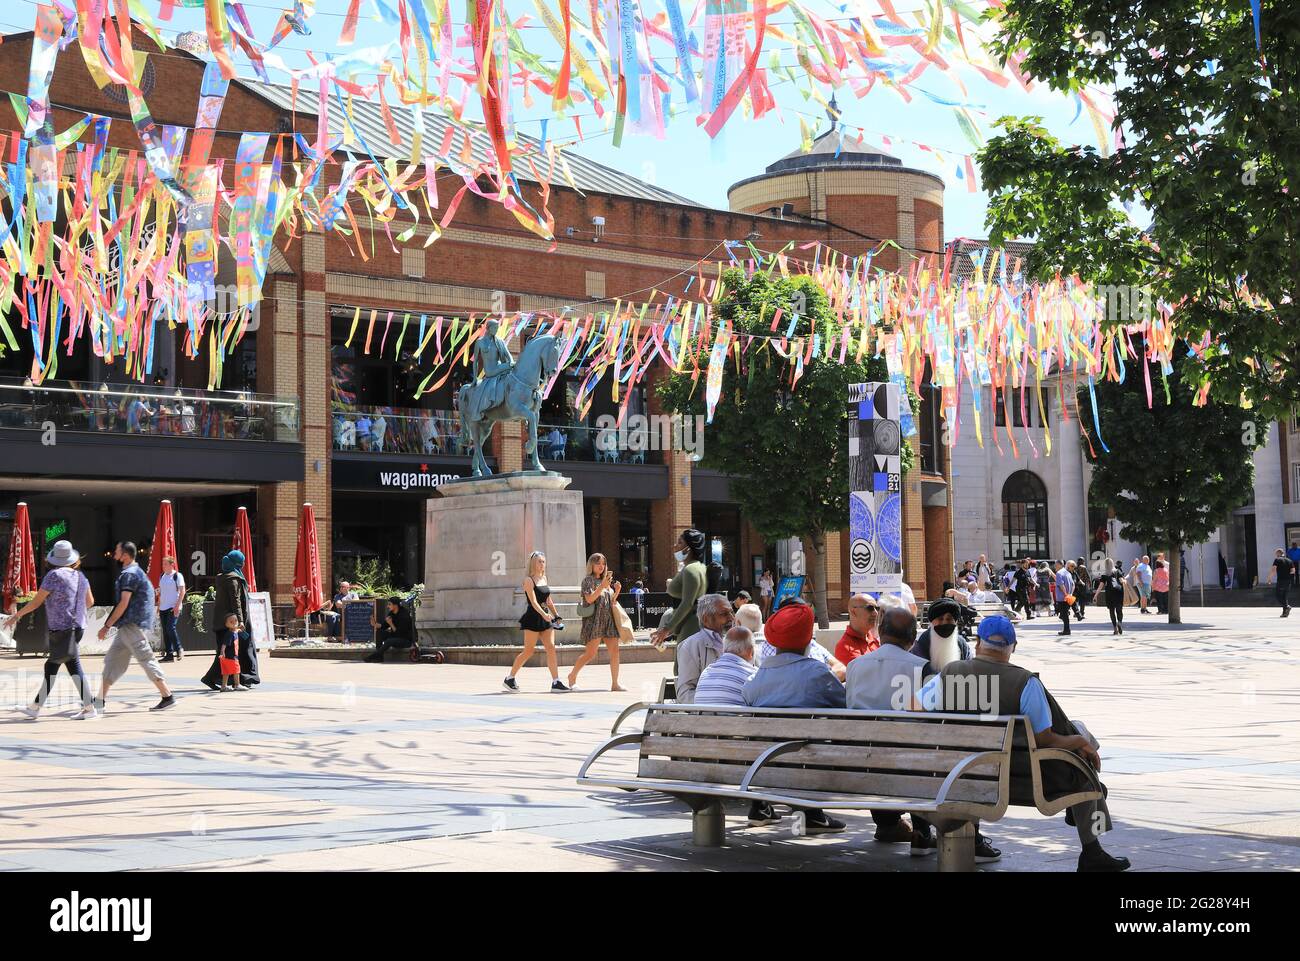 Un baldacchino di nastri arcobaleno è stato istallato su piazza Broadgate, per la cerimonia di apertura della città britannica della cultura di Coventry, il 4 giugno 2021. Foto Stock